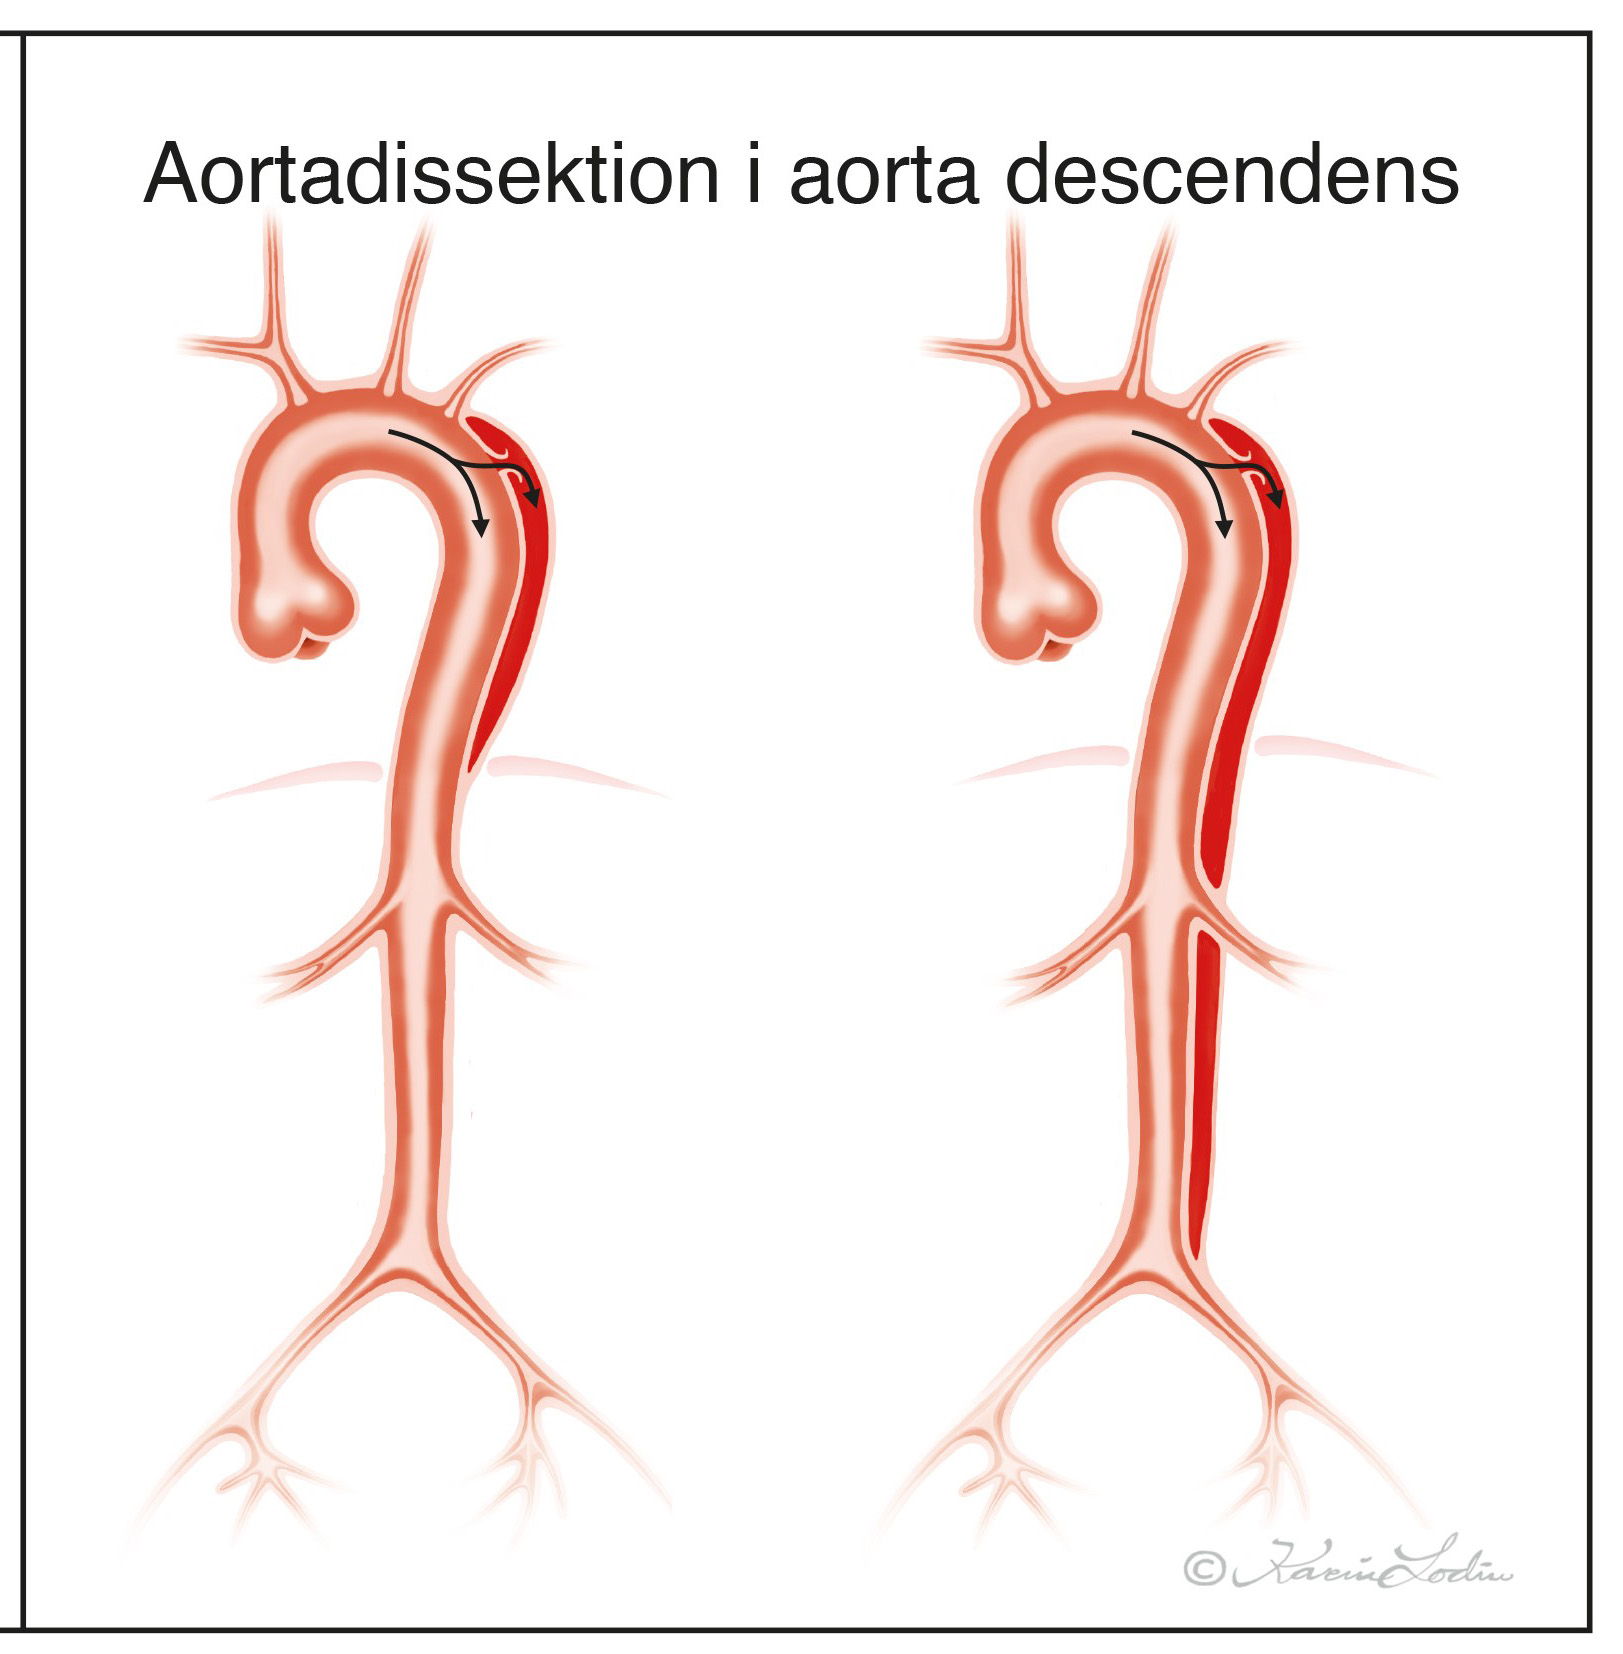 aortadissektioner_descendens.jpg